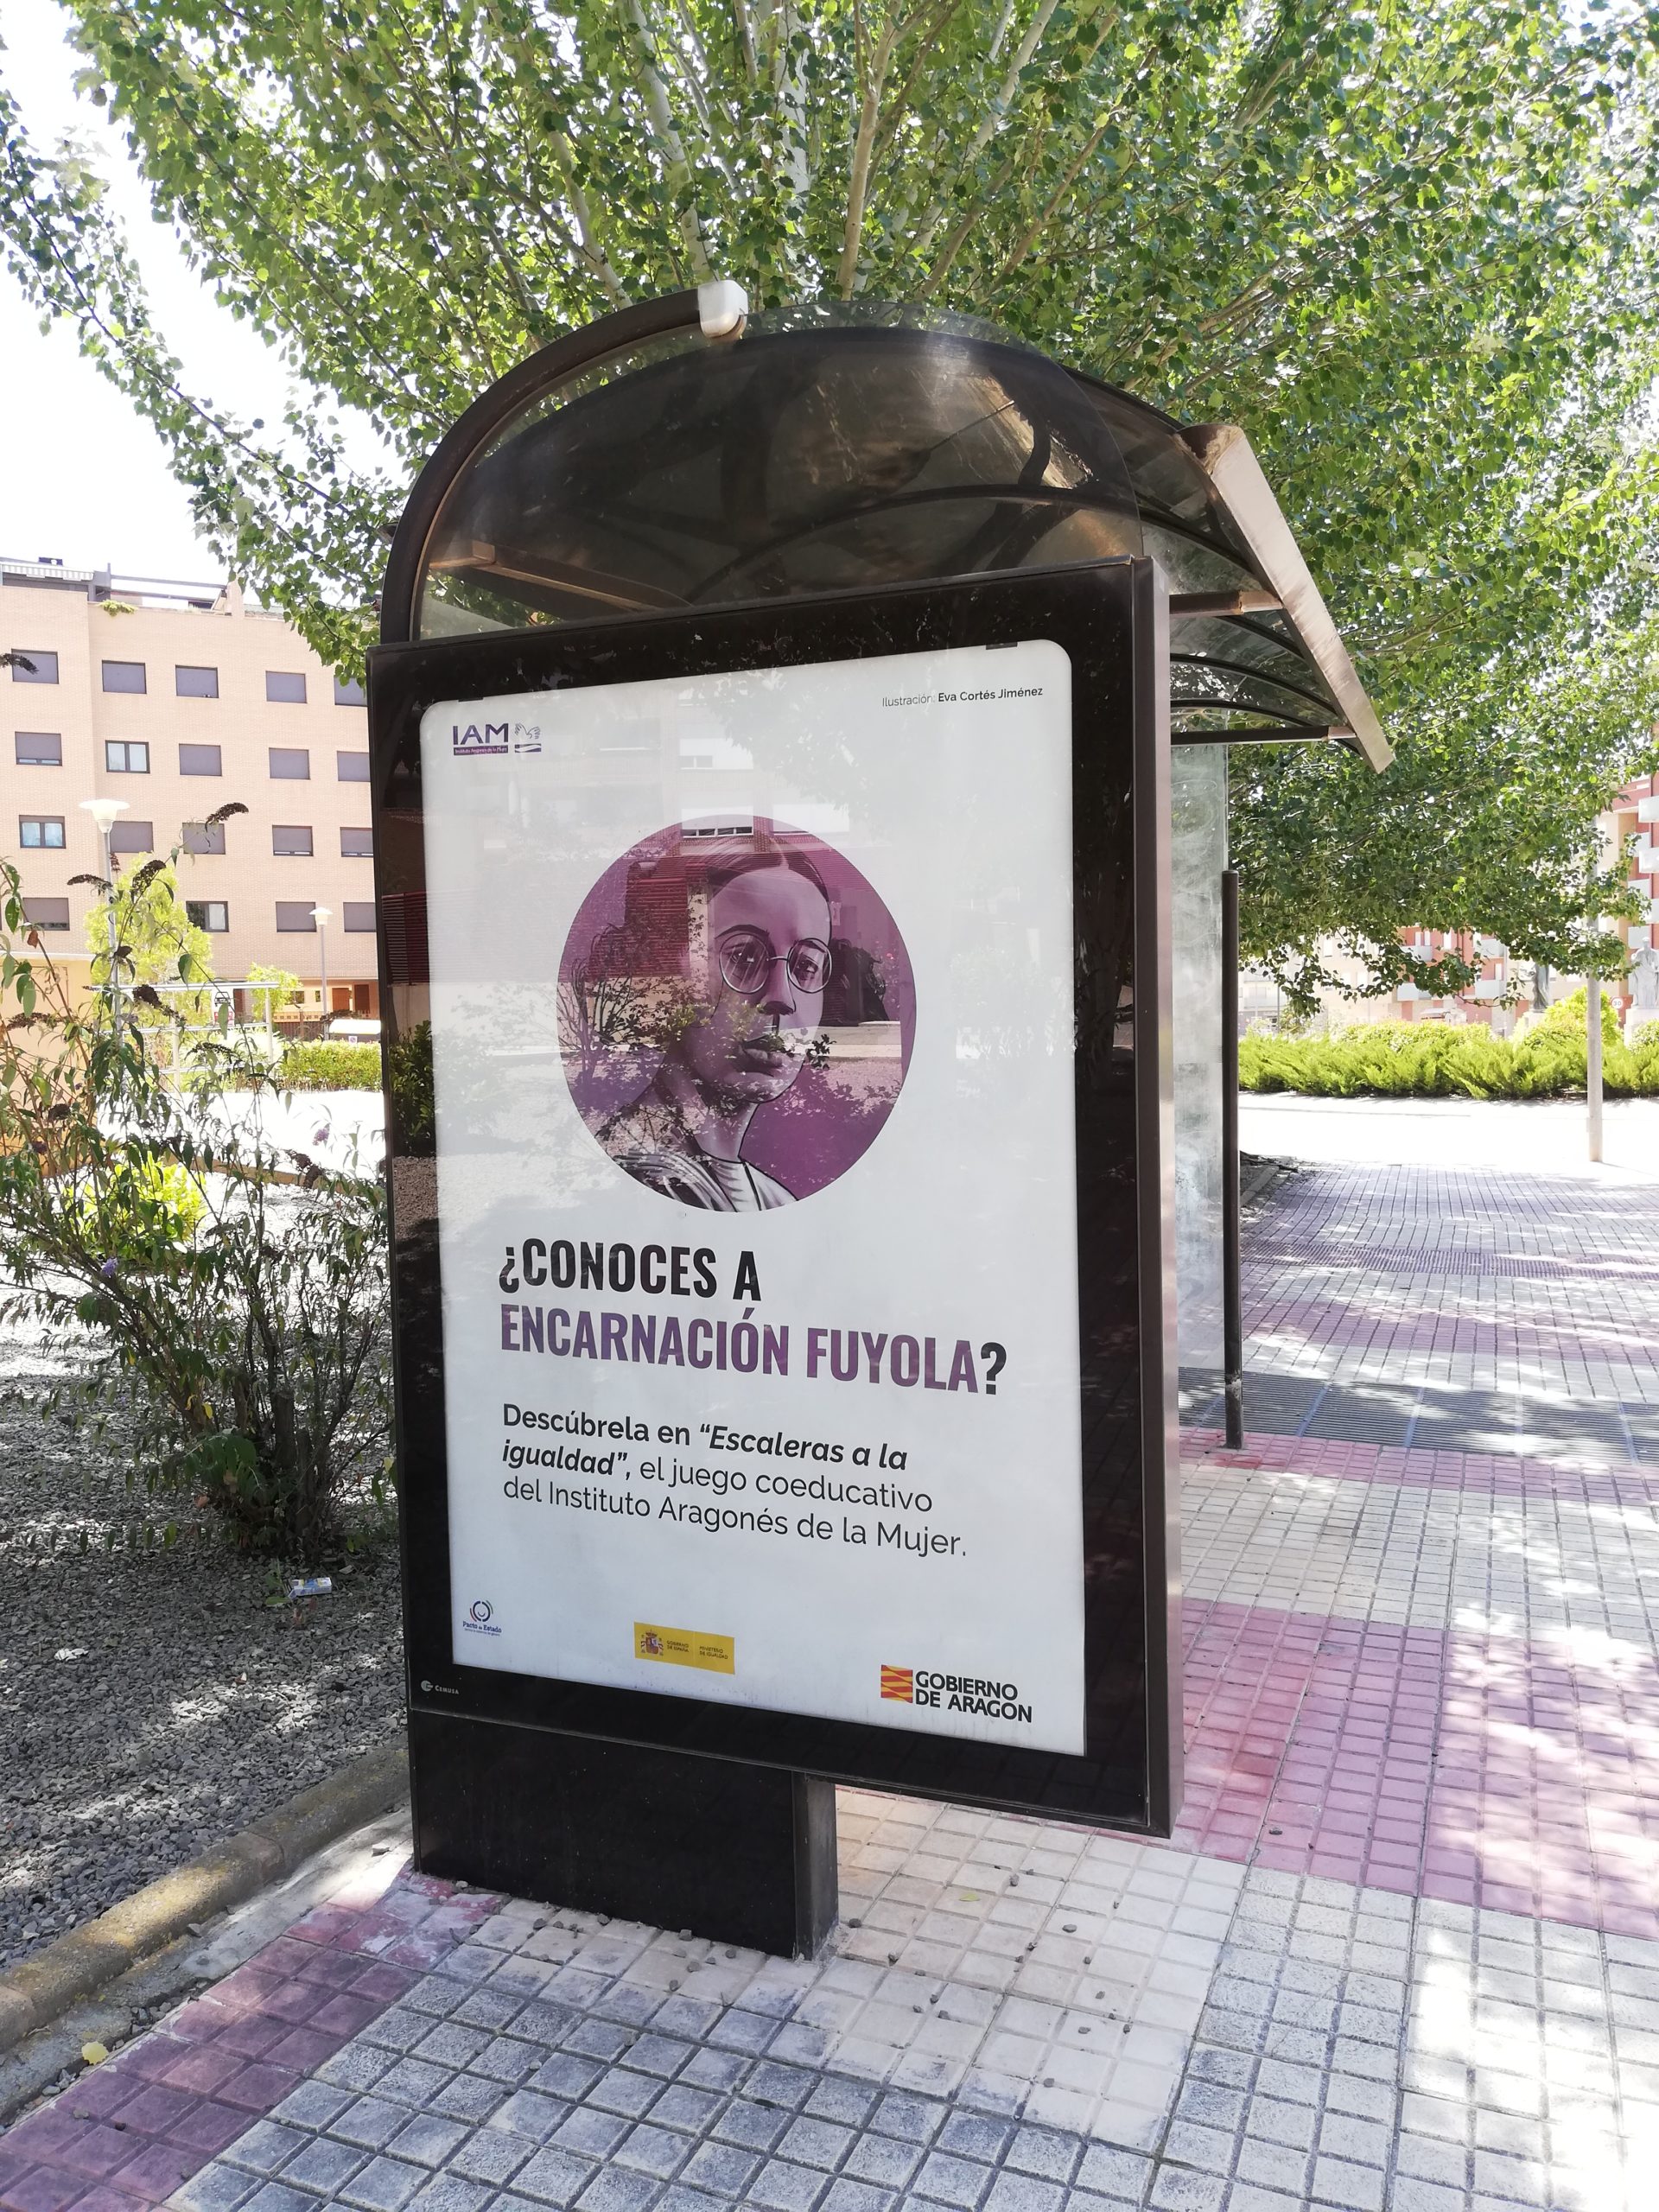 Mupi en Teruel de la campaña "Escaleras a la Igualdad" interpelando: ¿Conoces a Encarnación Fuyola?